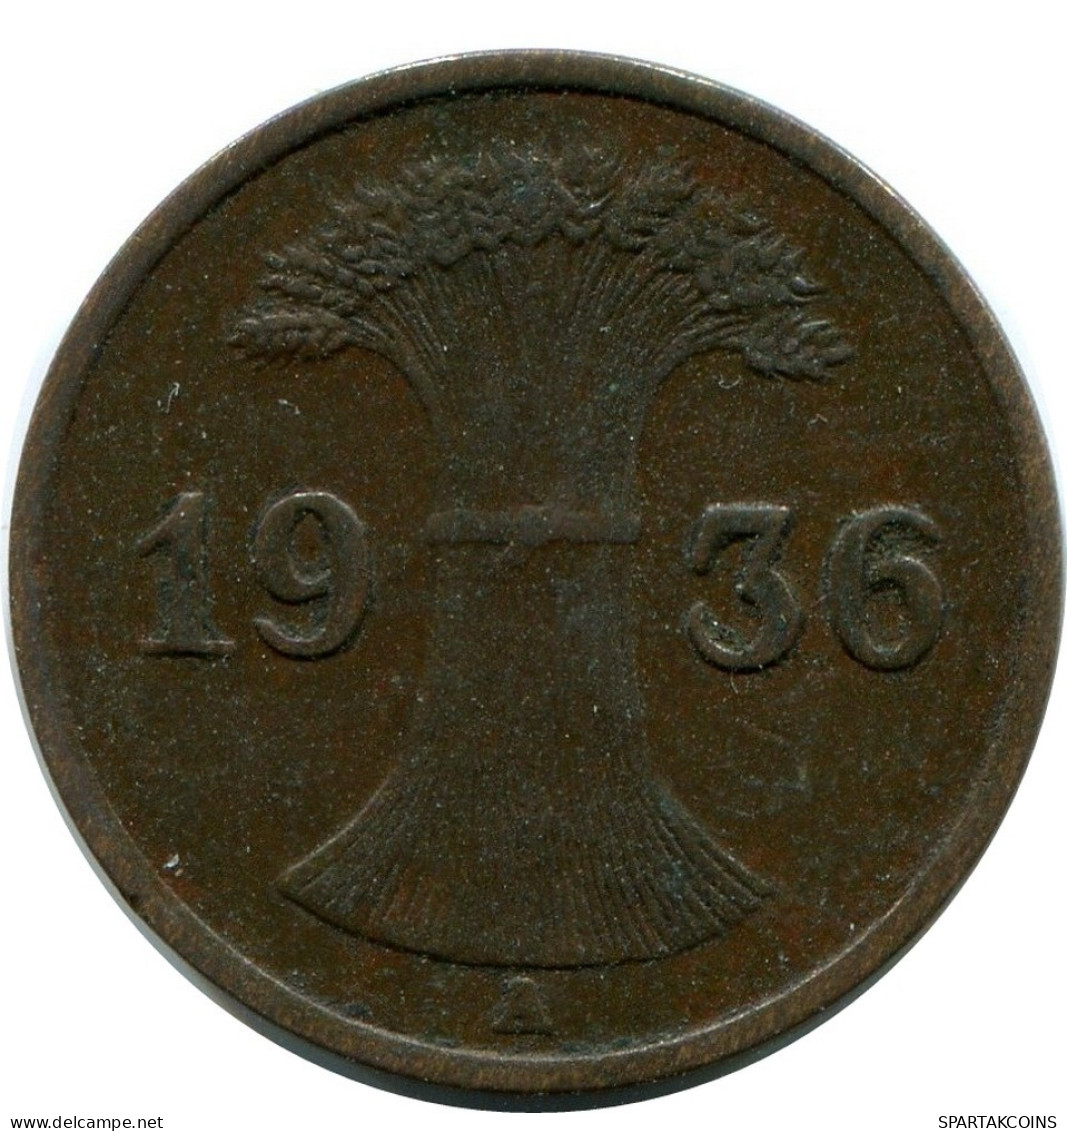 1 REICHSPFENNIG 1936 A ALEMANIA Moneda GERMANY #DA779.E.A - 1 Reichspfennig